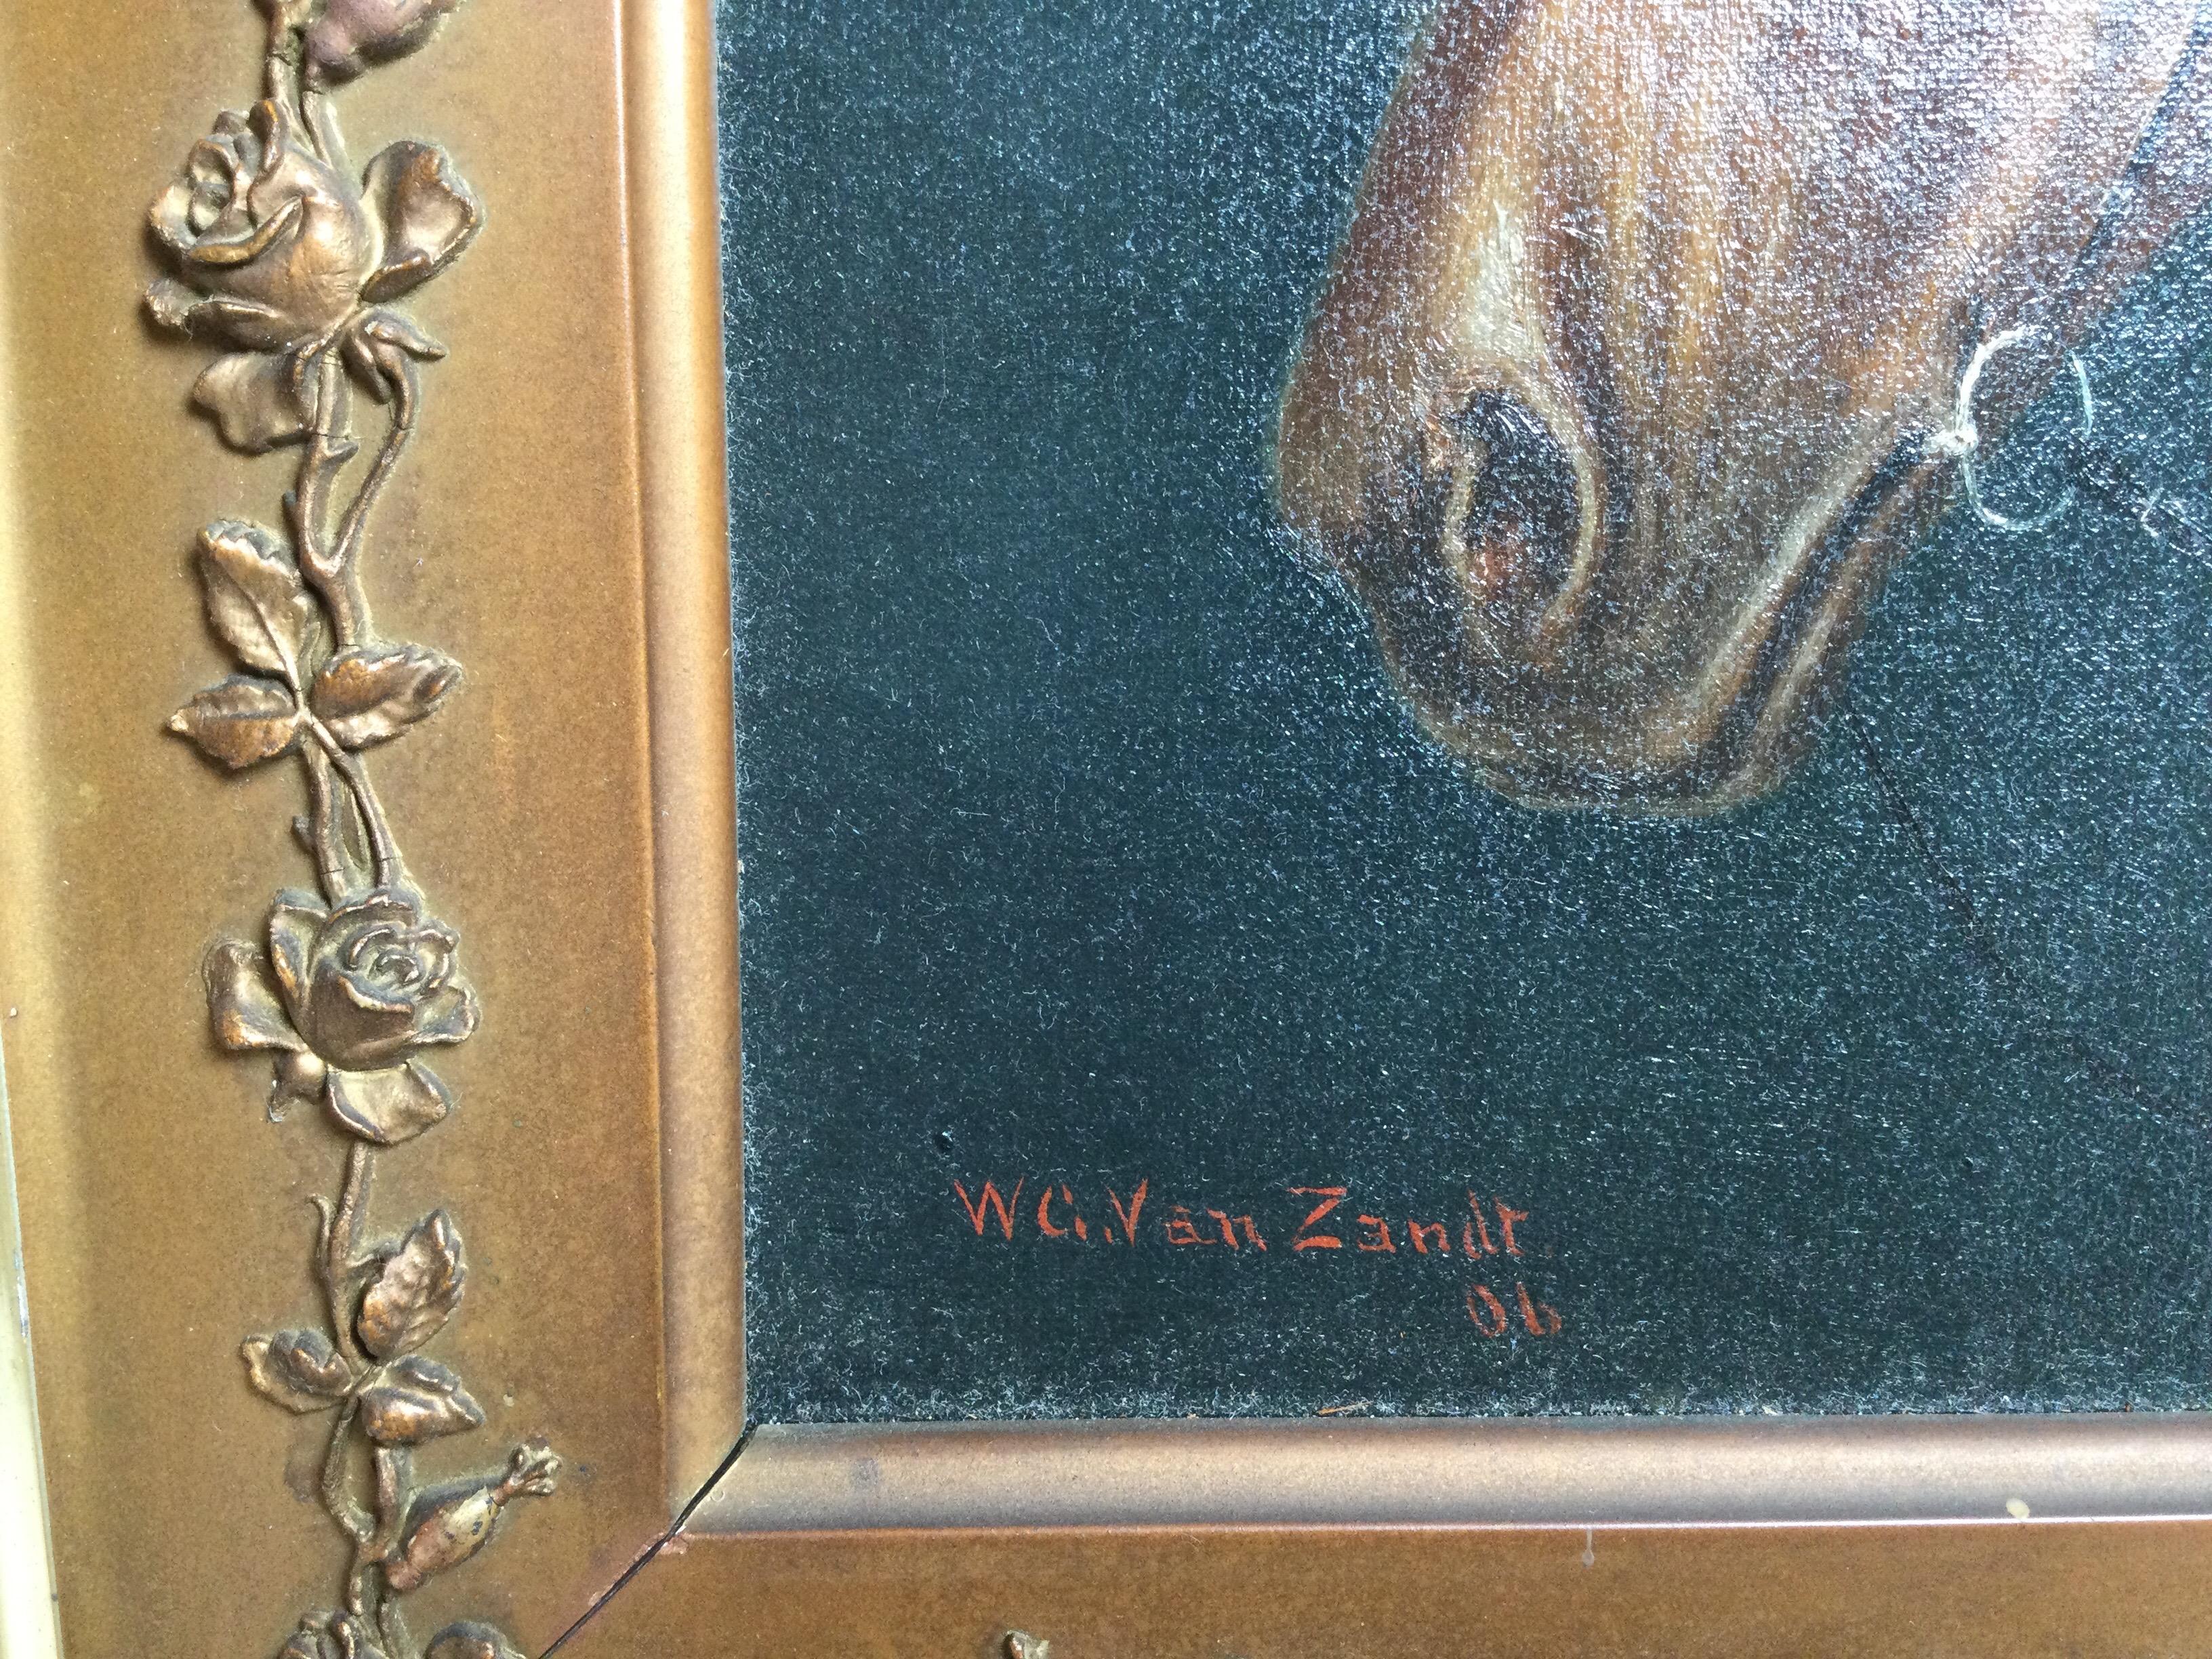 Portrait d'un cheval, huile sur toile de William Van Zandt. Mesures : 15 1/2